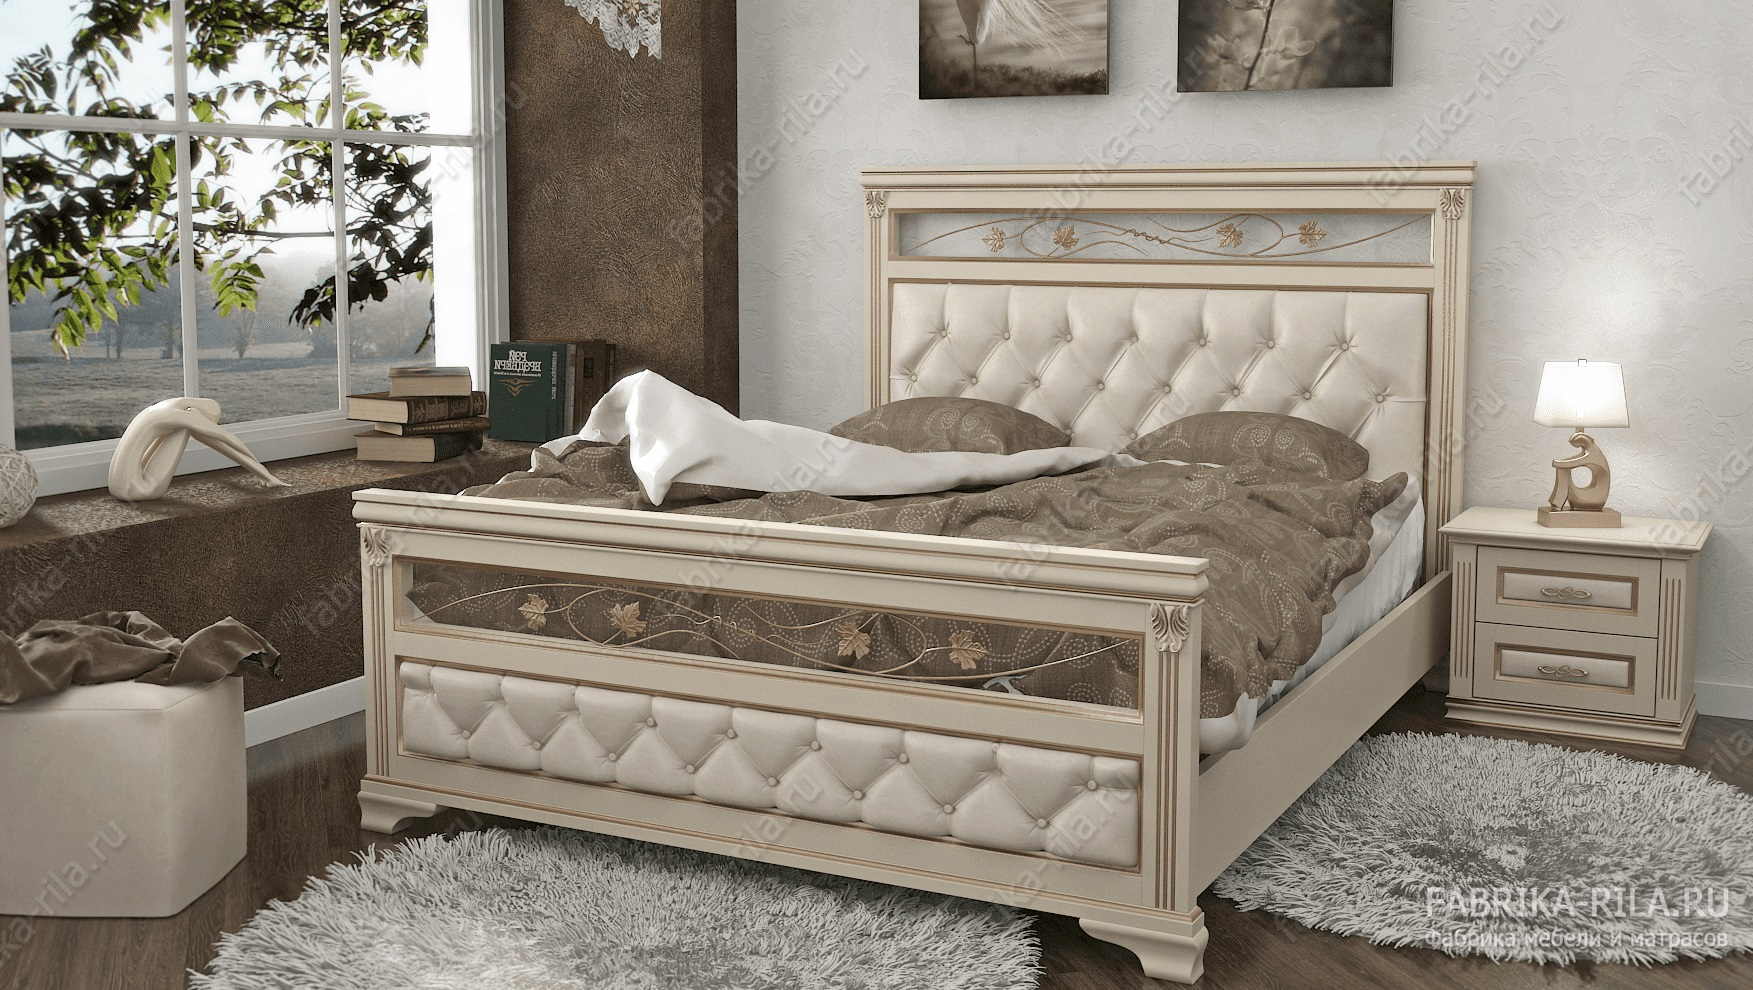 Кровать Lirona 3-MV — 90x190 см. из дуба